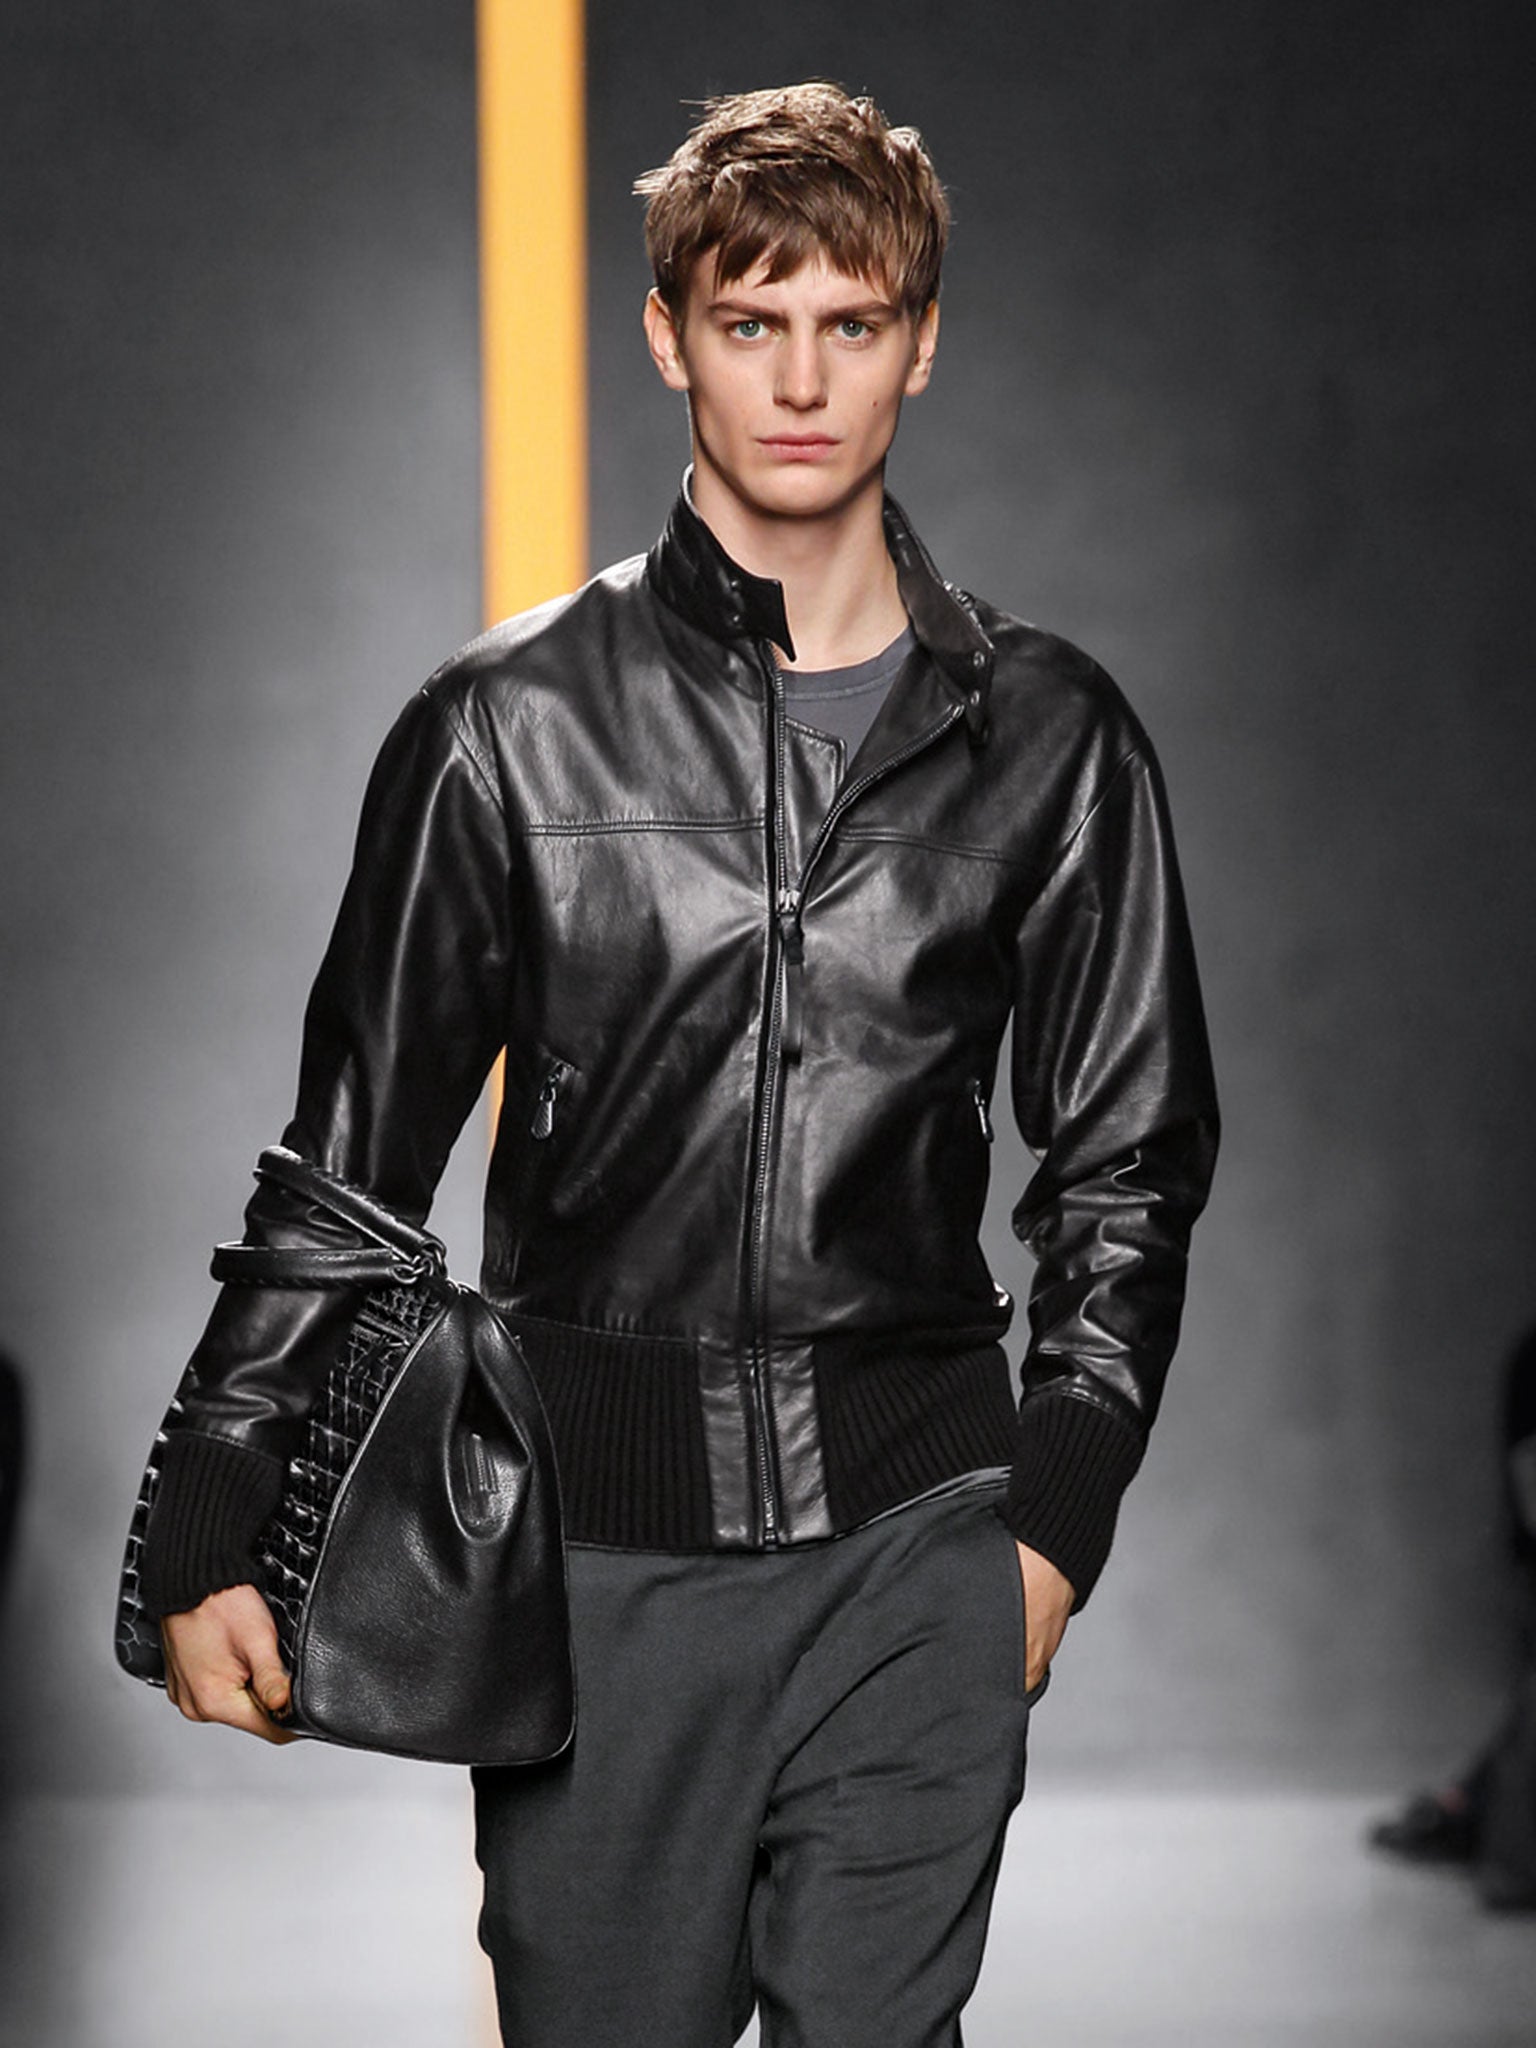 Hermes Men's Real Leather Jacket